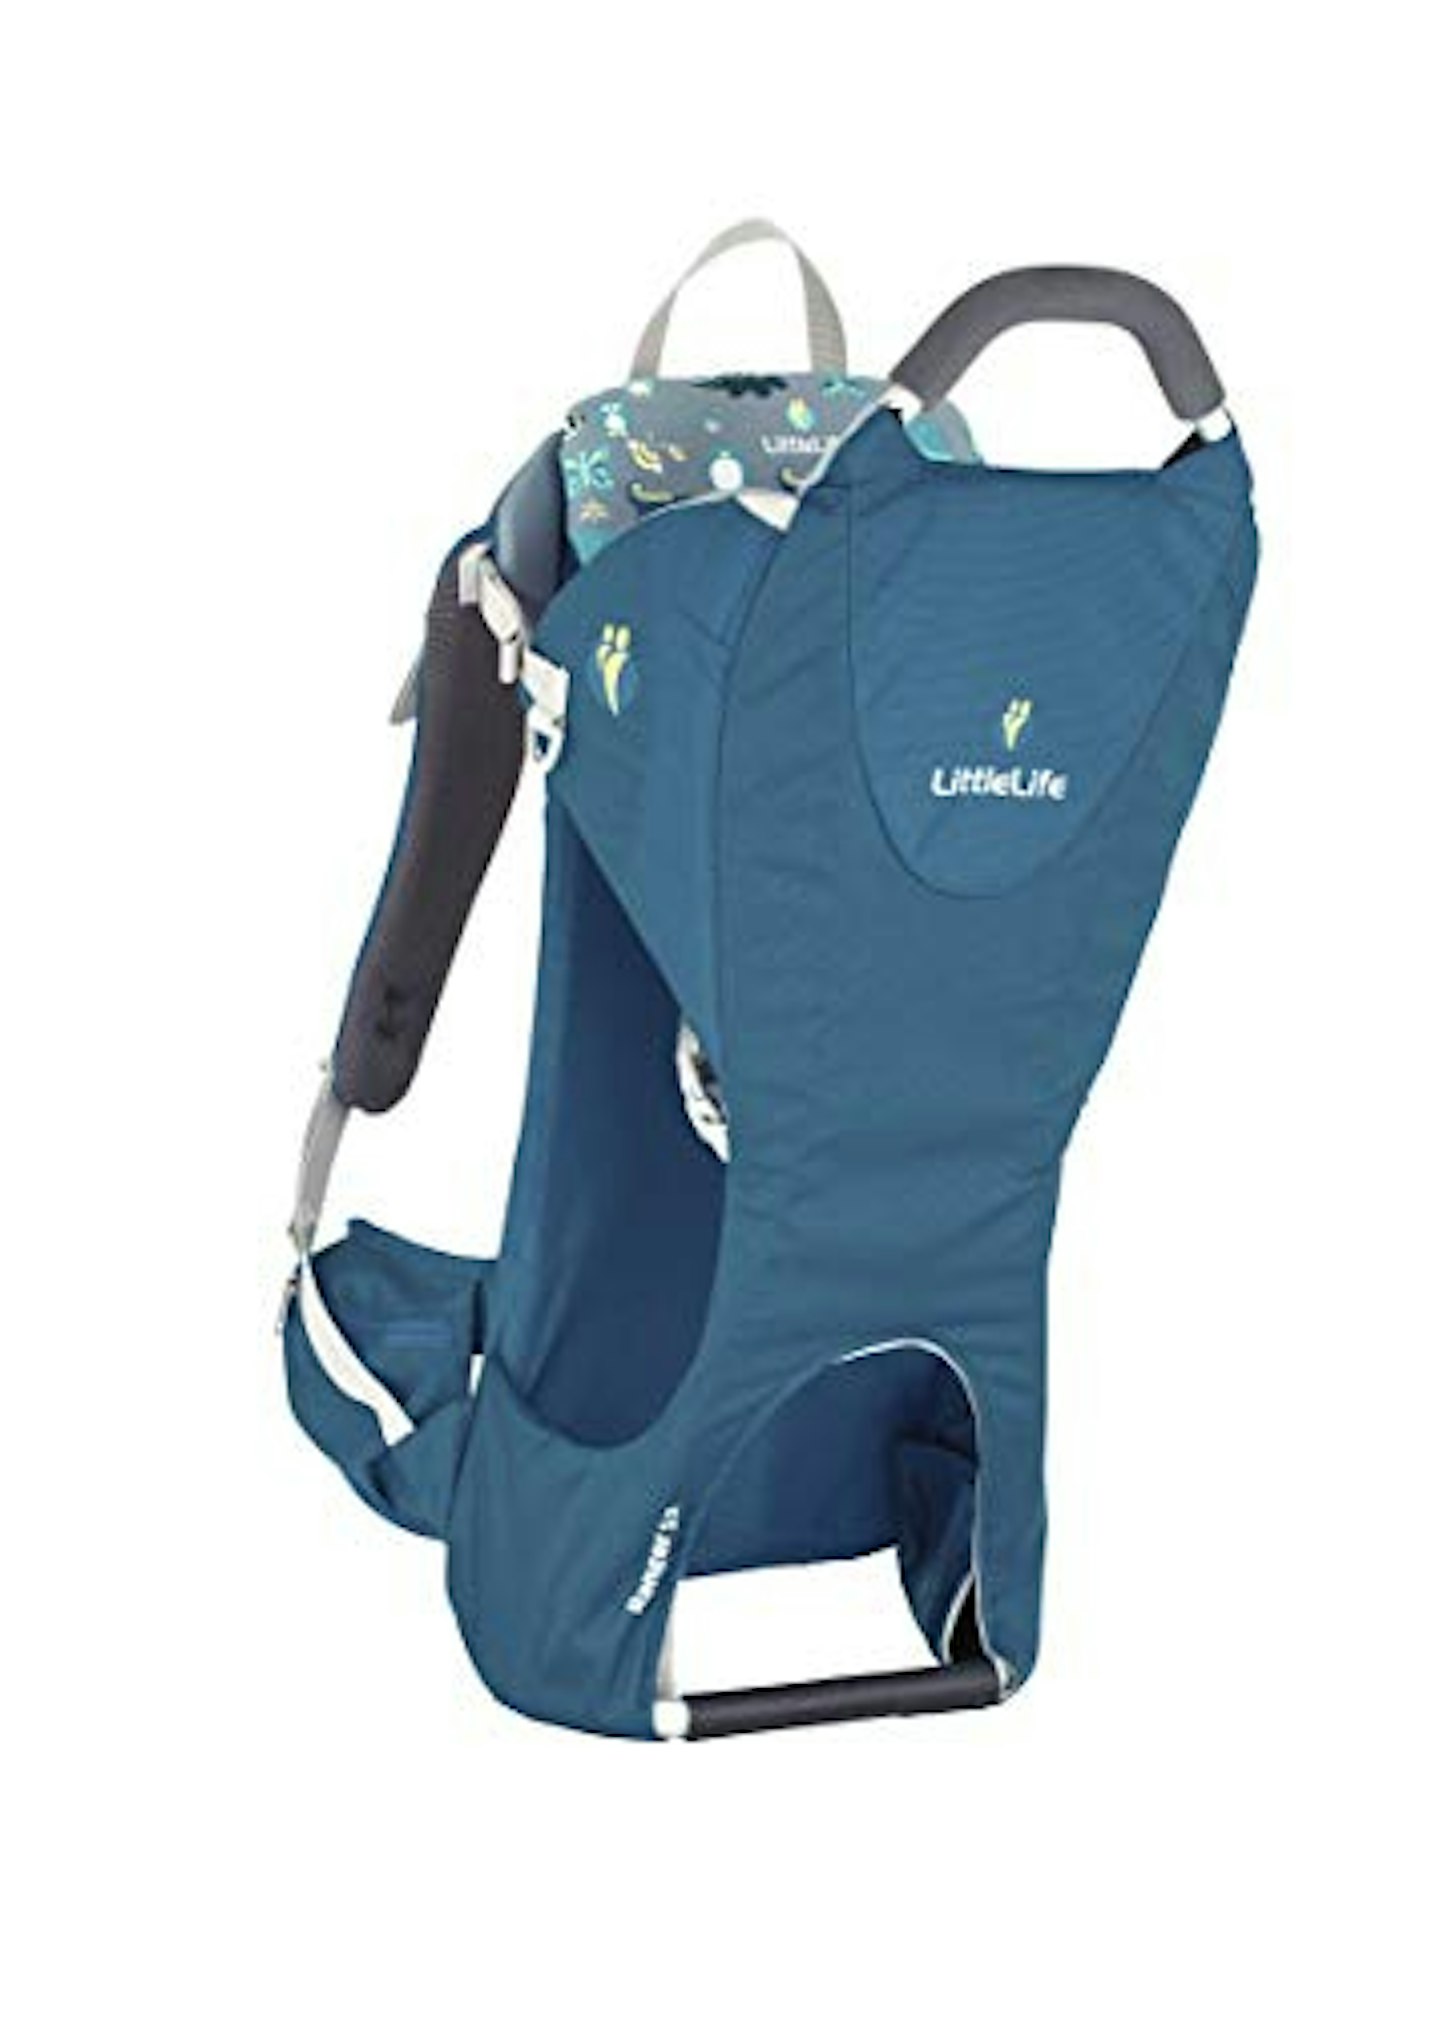 The best baby carrier backpacks: LittleLife Ranger S2 Child Carrier